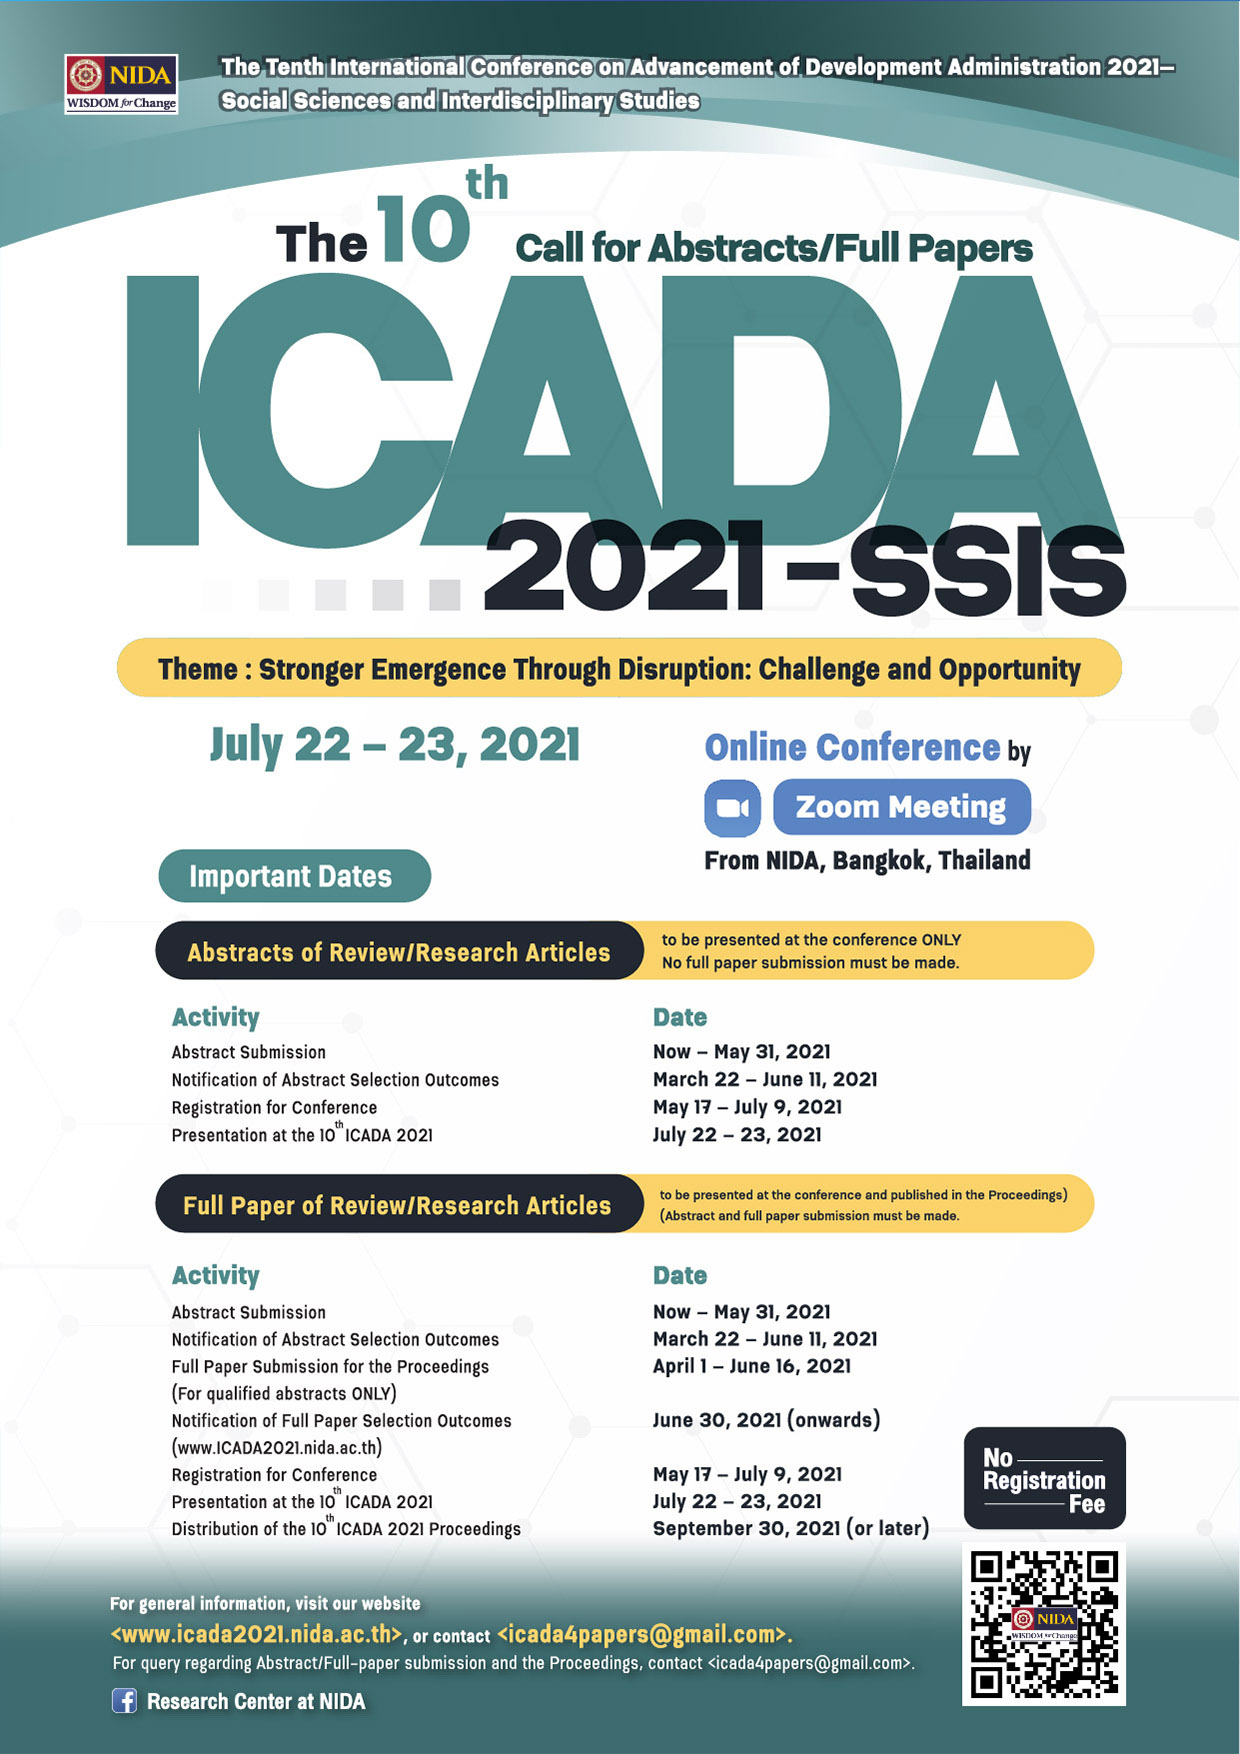 ICADA2021 